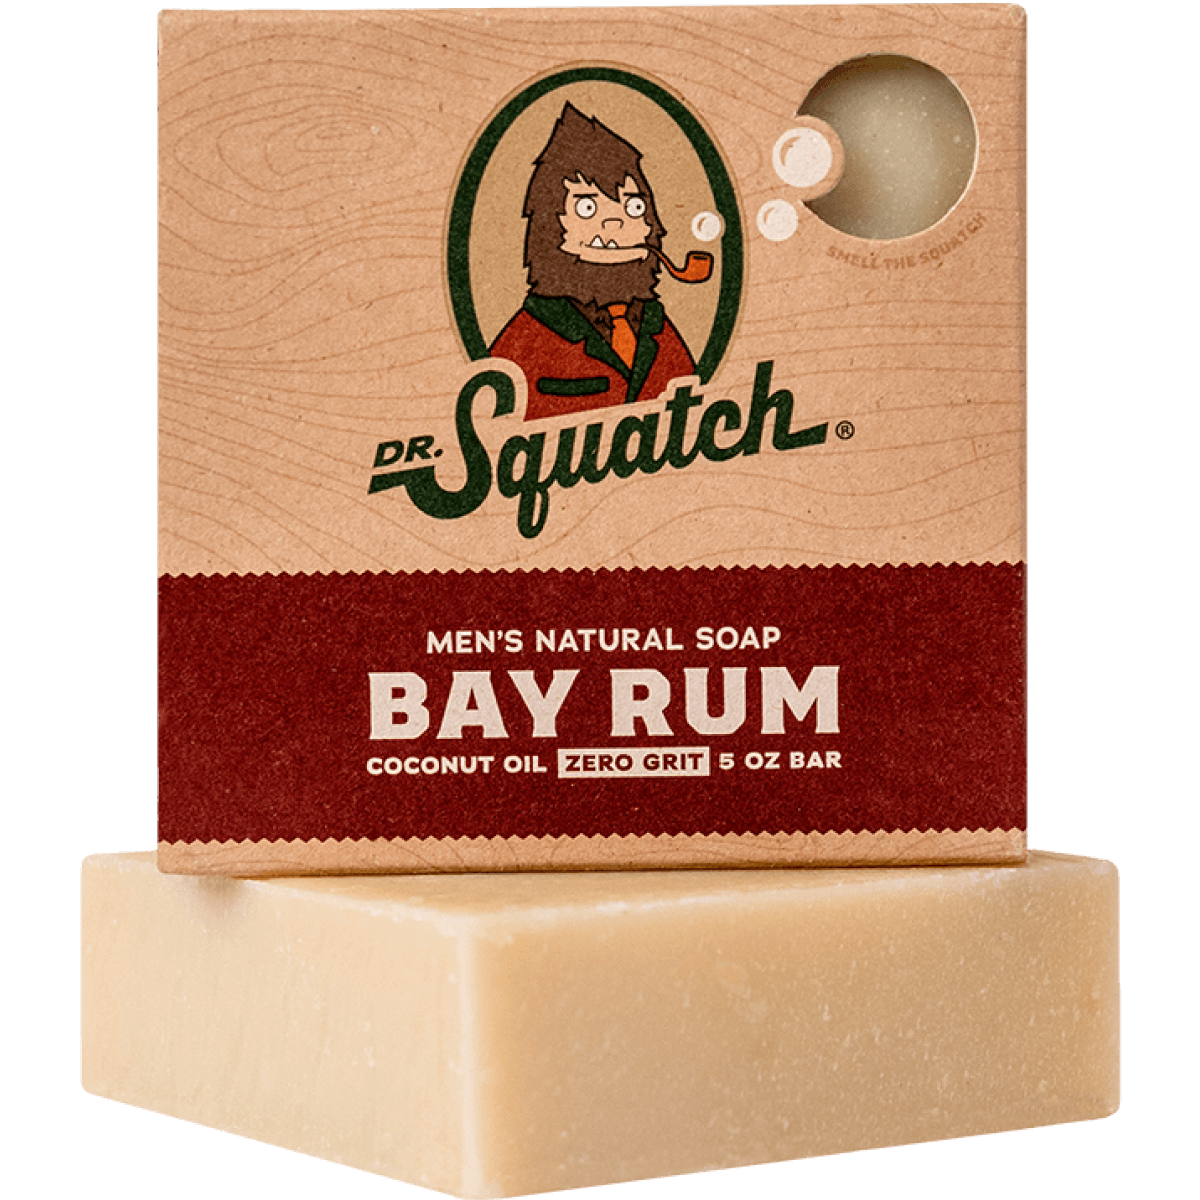 Dr. Squatch Men's Natural Soap Bay Rum 5oz Bar